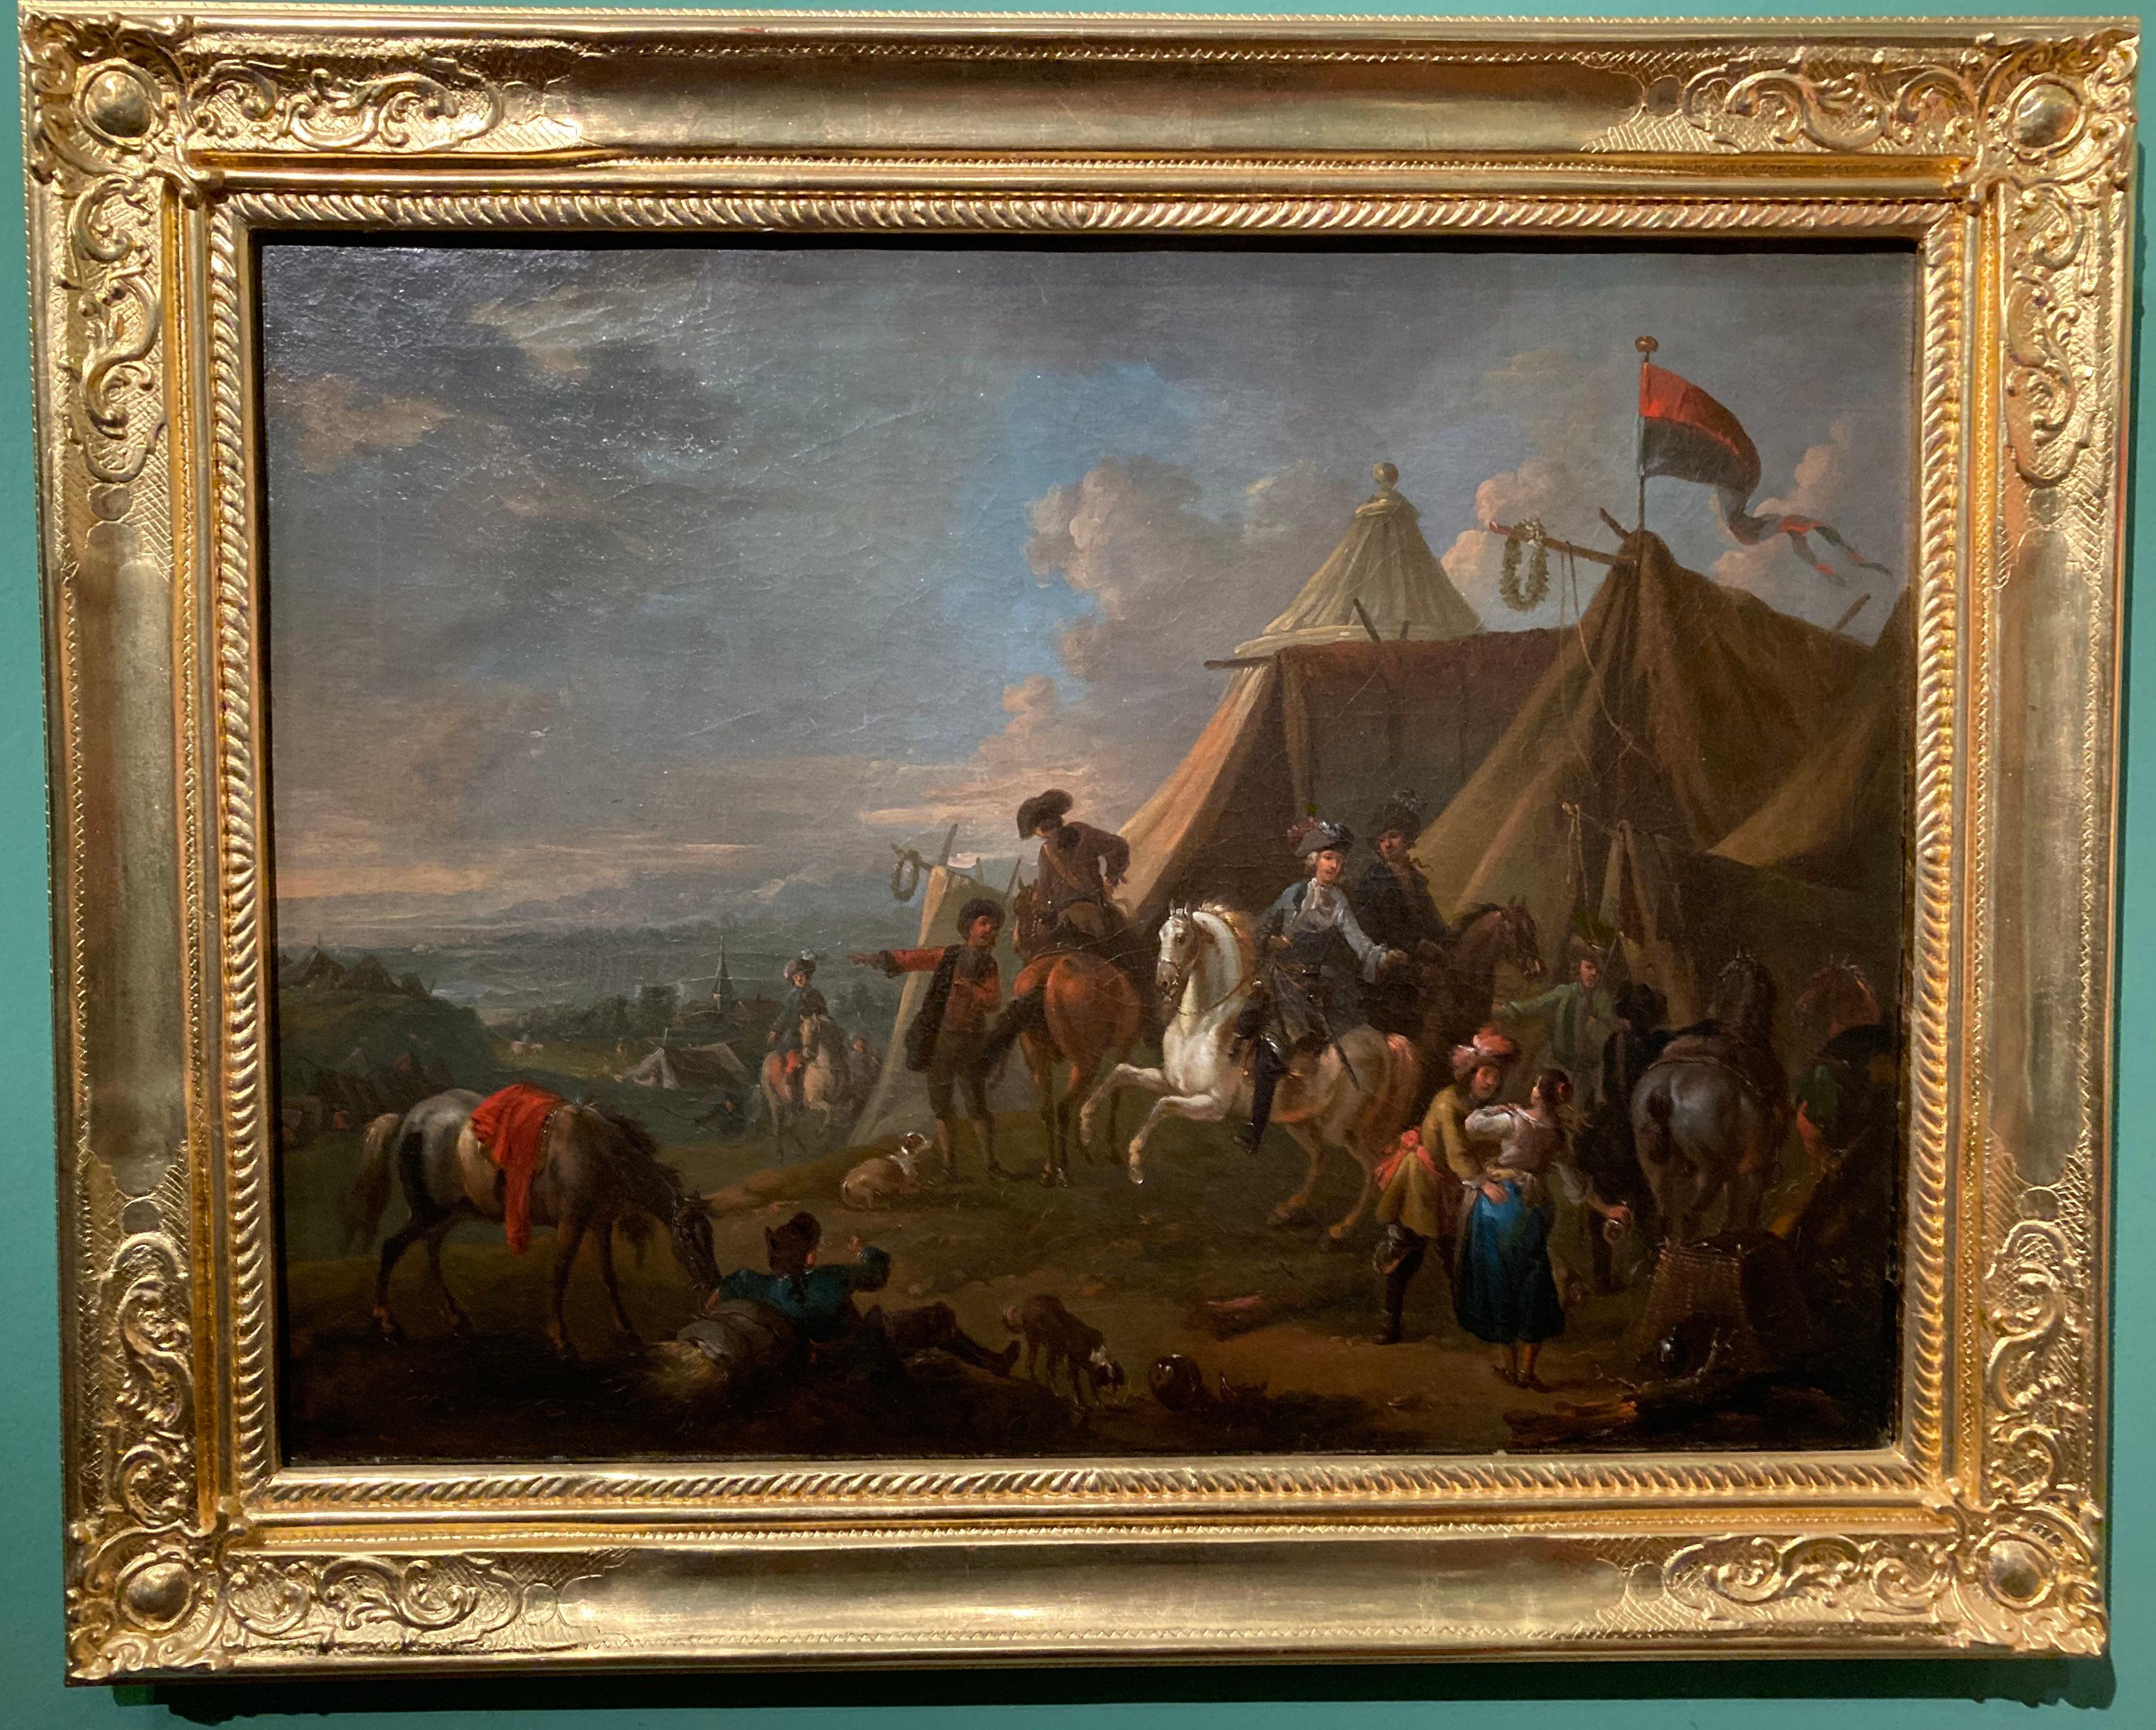 Soldaten von einem Zelt, Soldatenlager, Kreis Van Huchtenburg, Gemälde alter Meister (Barock), Painting, von Jan van Huchtenburg